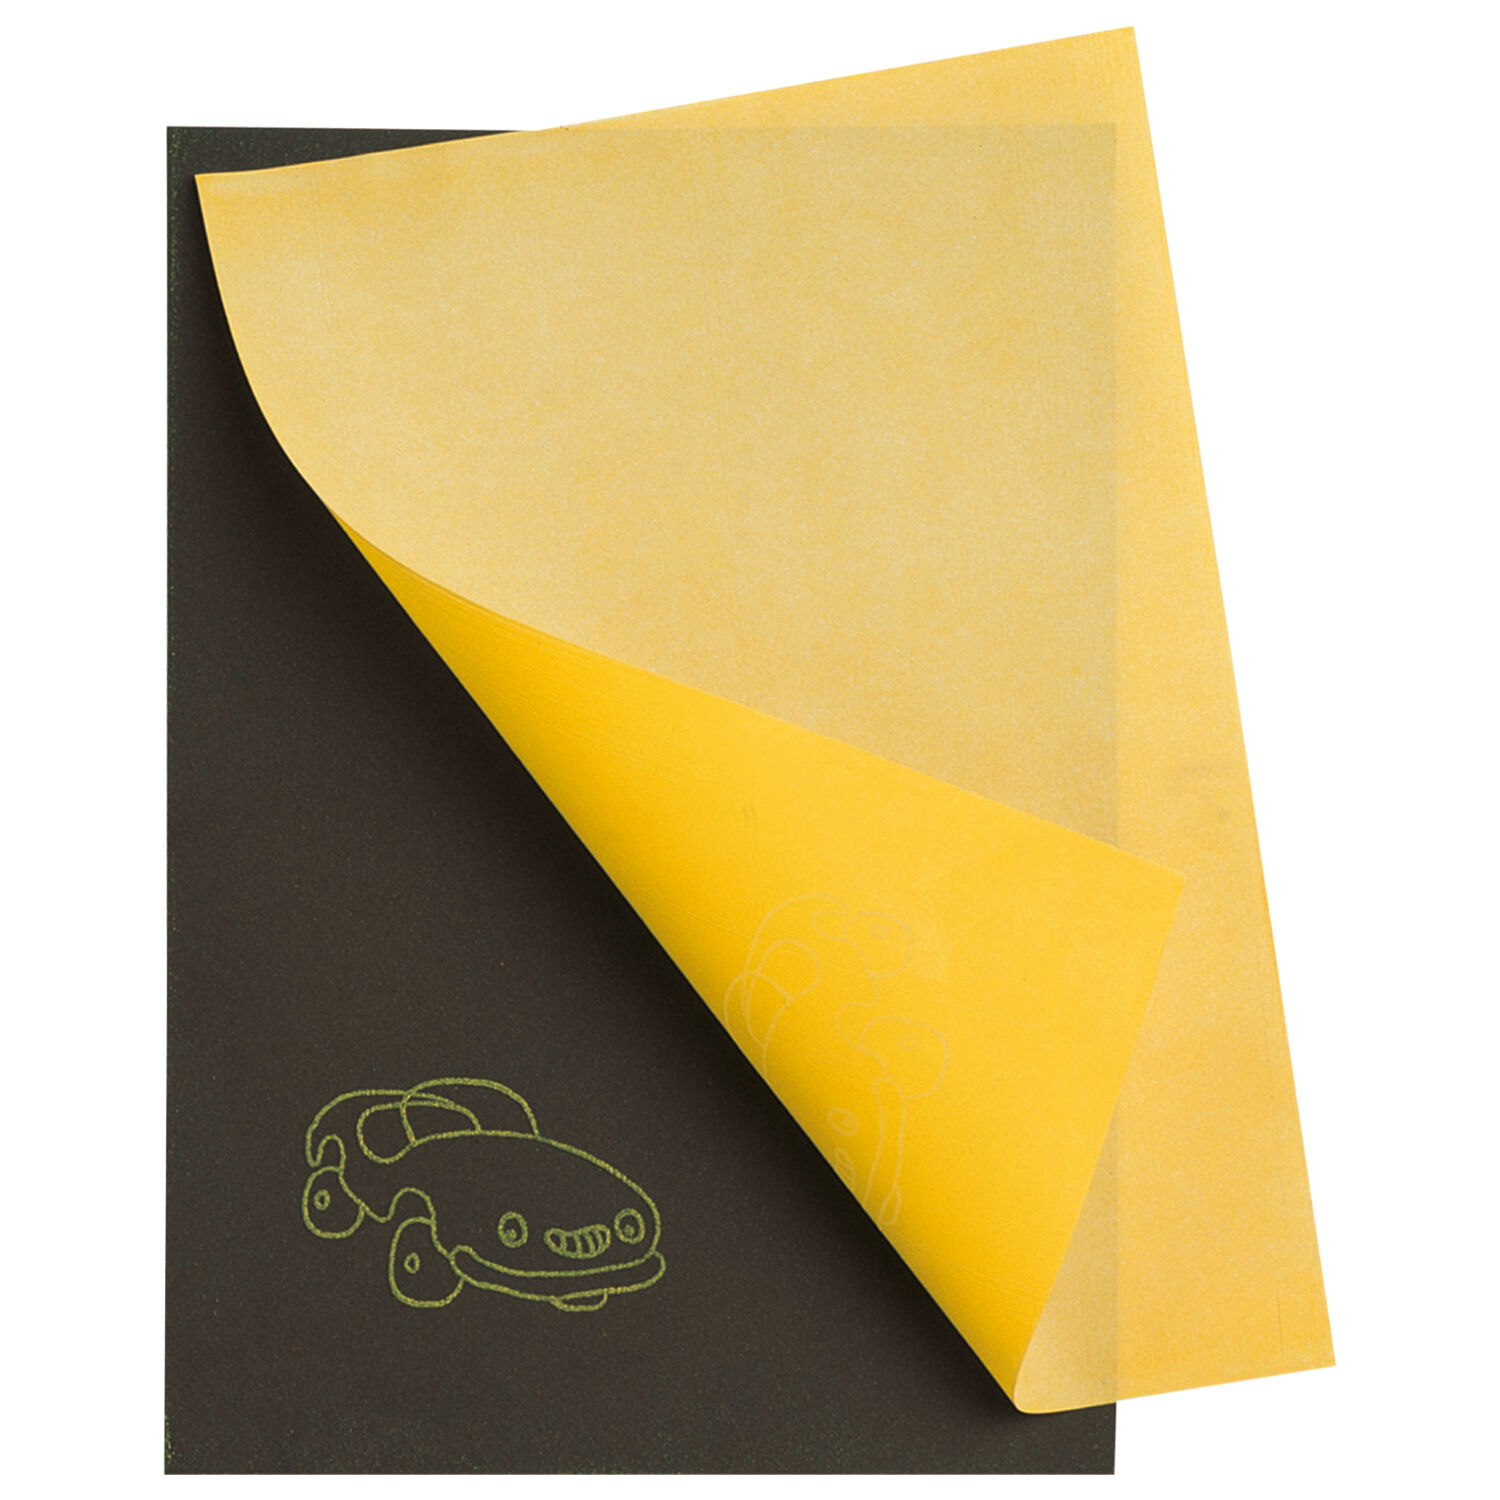 NEU Durchschreibepapier / Durchzeichenpapier Febikopa, gelbes Kopierpapier, 50 x 70 cm, 1 Bogen